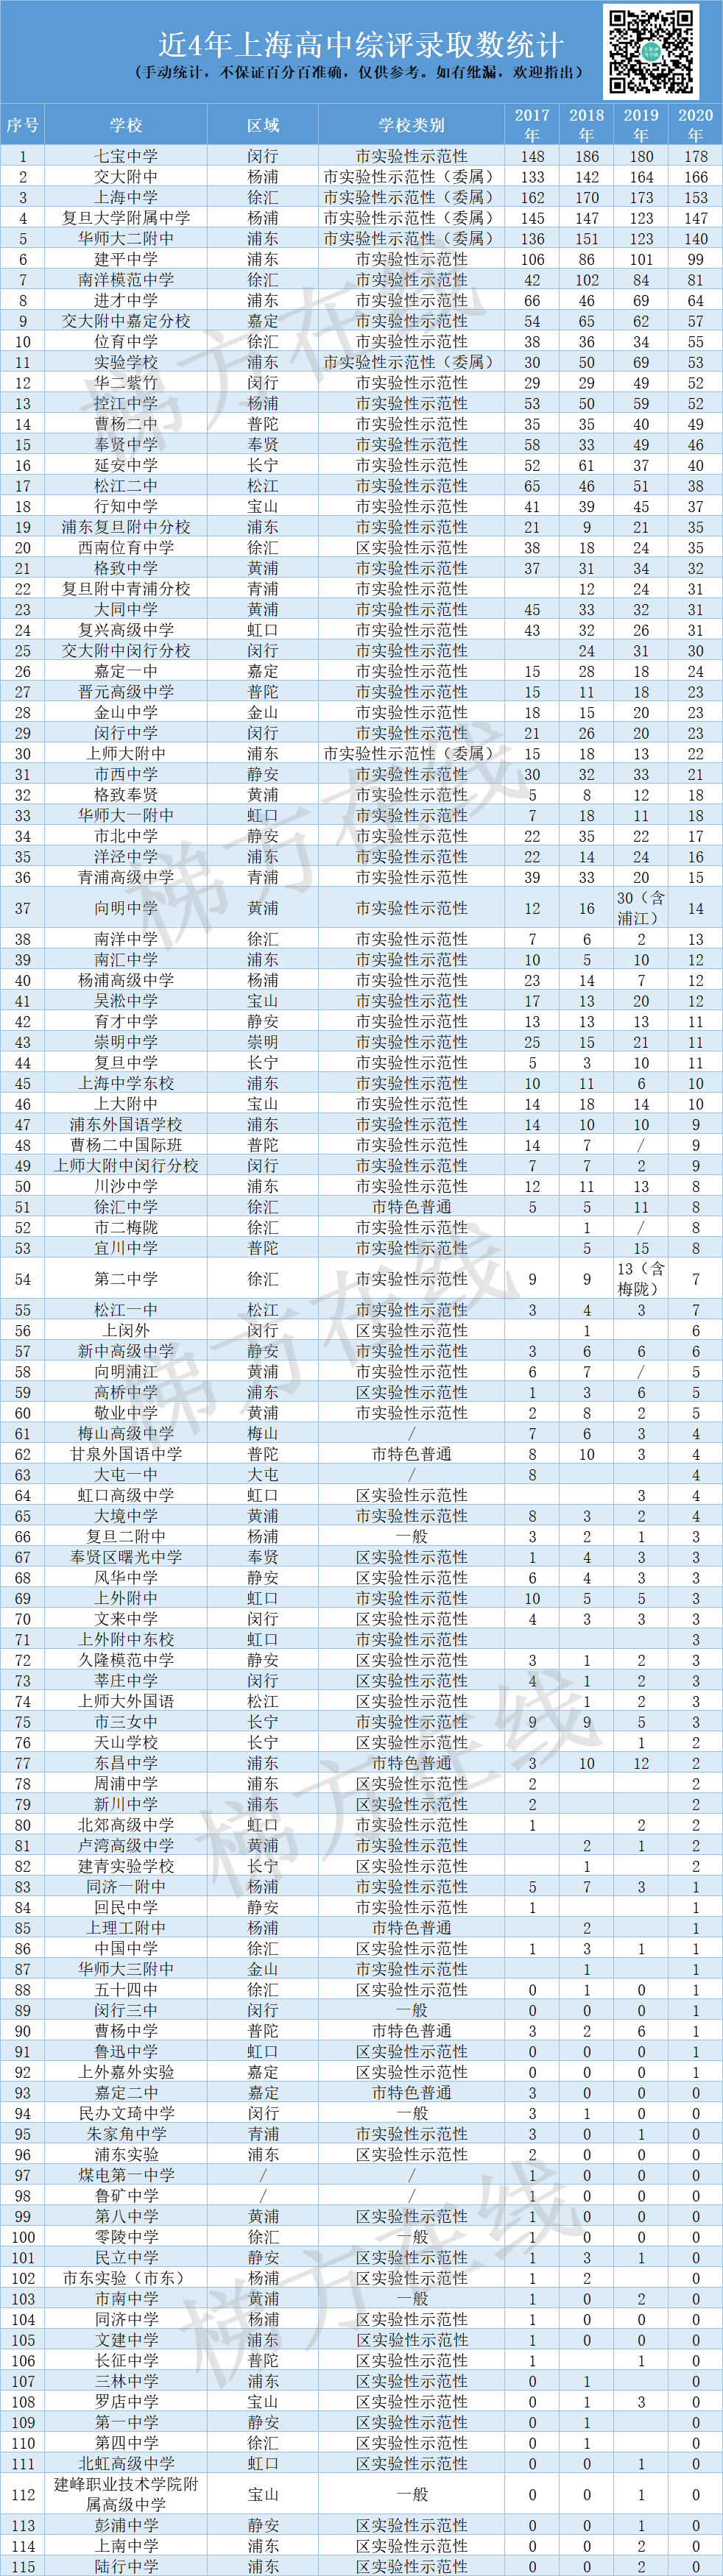 上海各区热门高中近几年高考表现大盘点